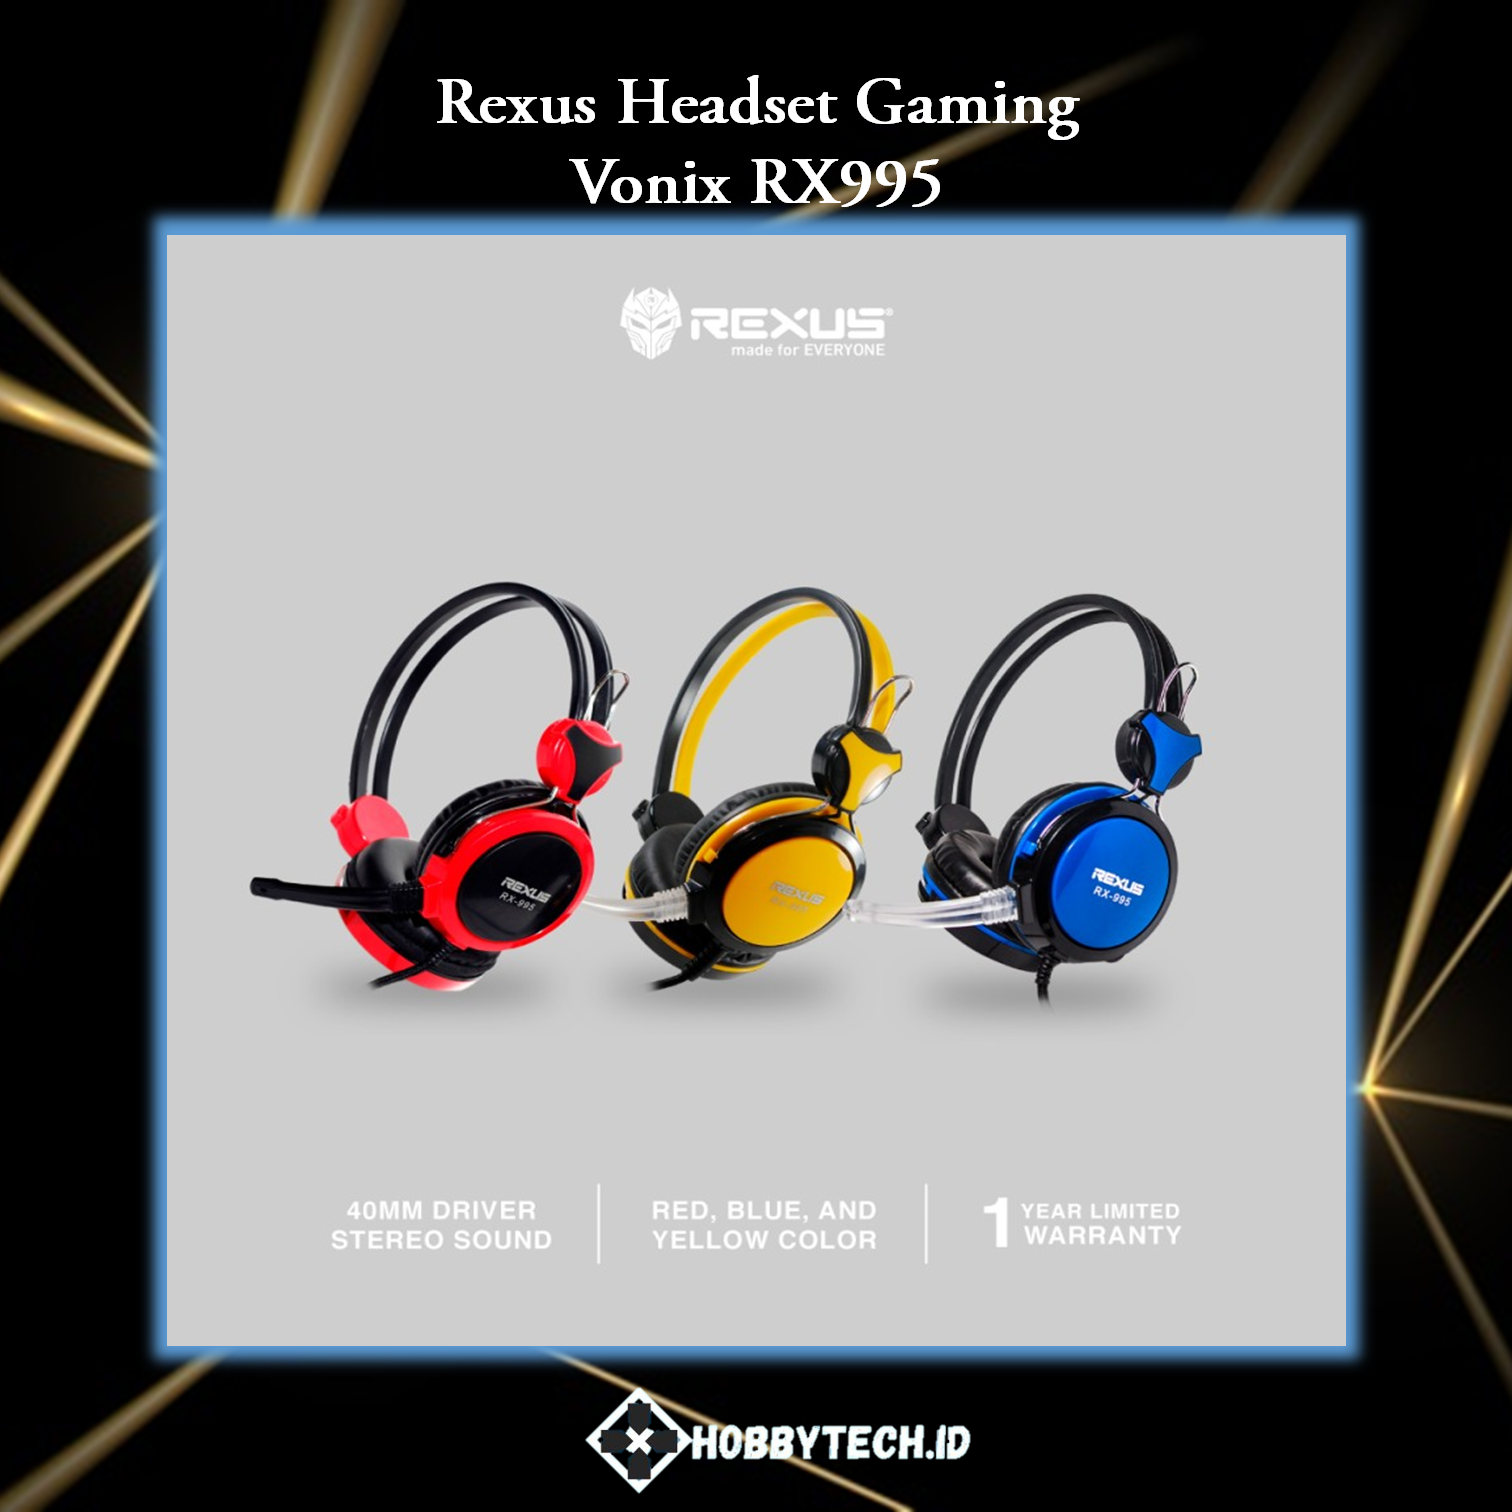 Rexus Headset Gaming Vonix RX995